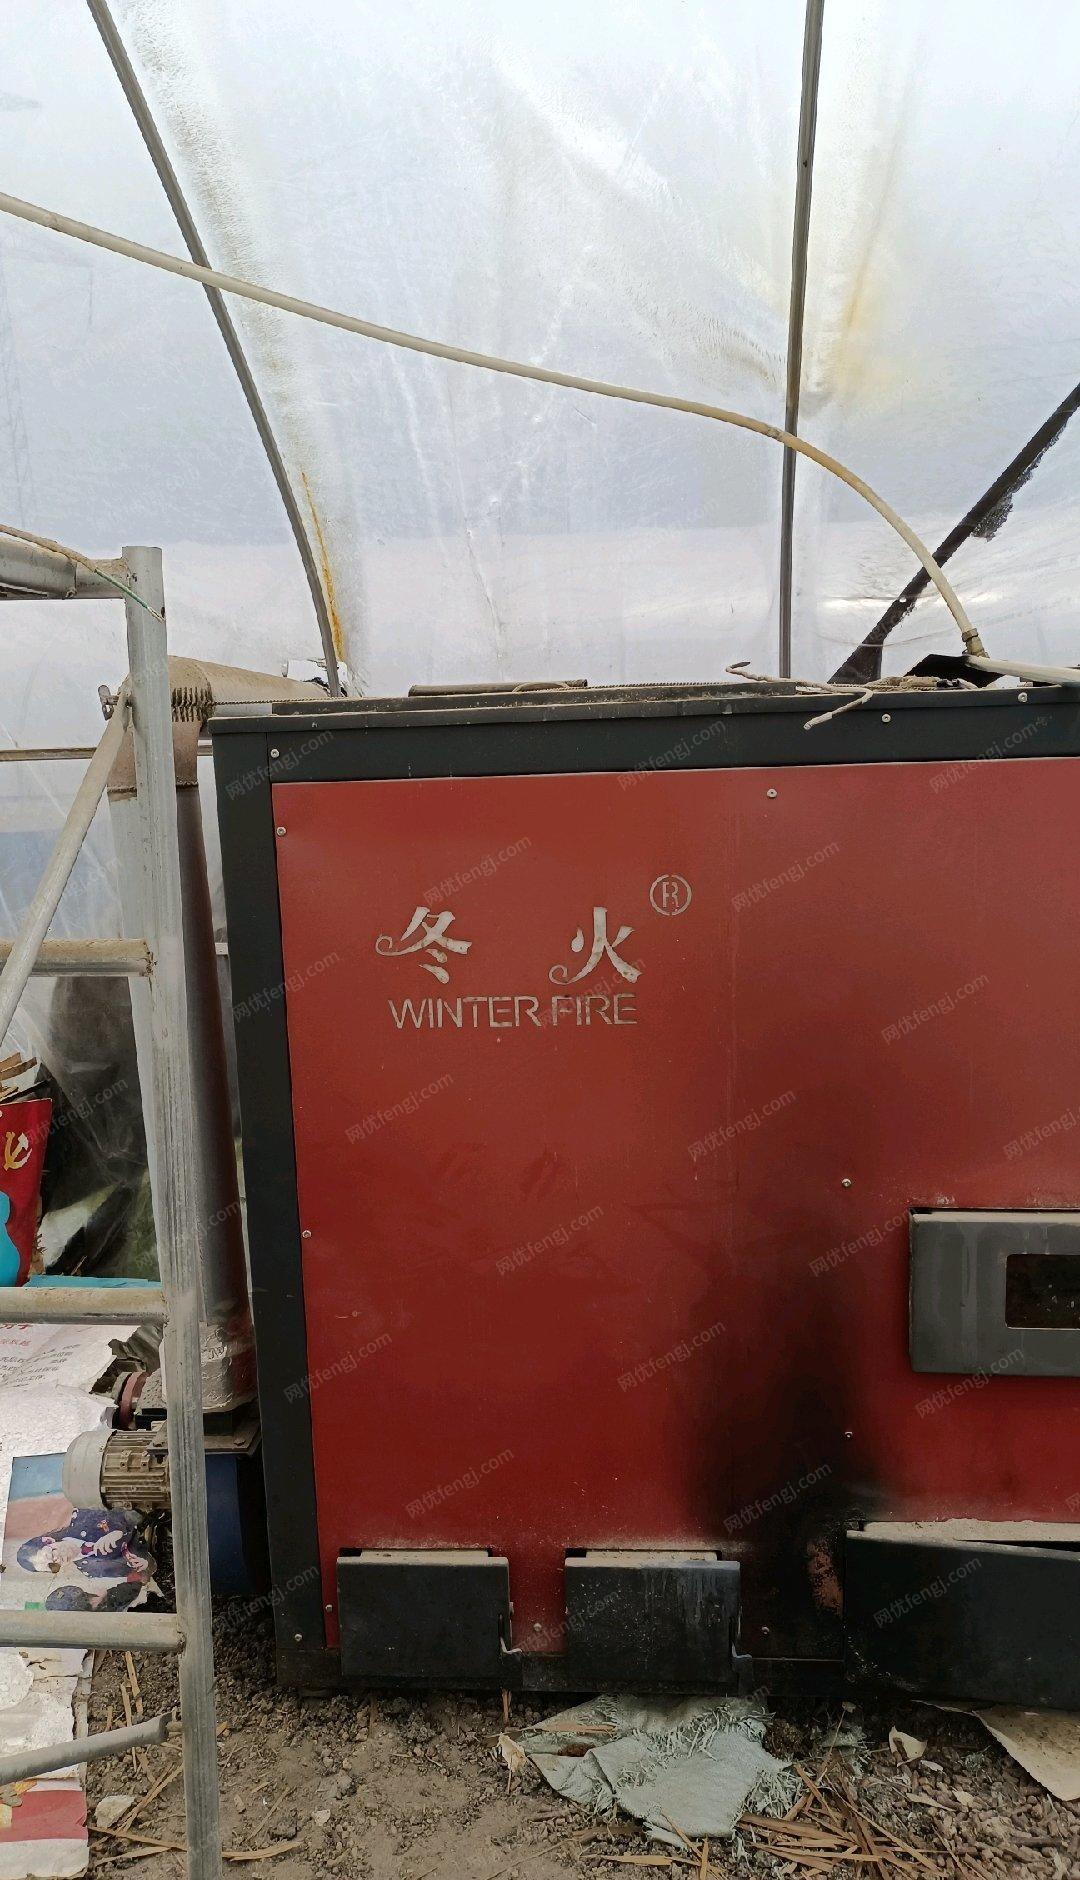 陕西西安锅炉购于2019年9月只用了一个冬季。当时购买是6.4万，现5万元出售